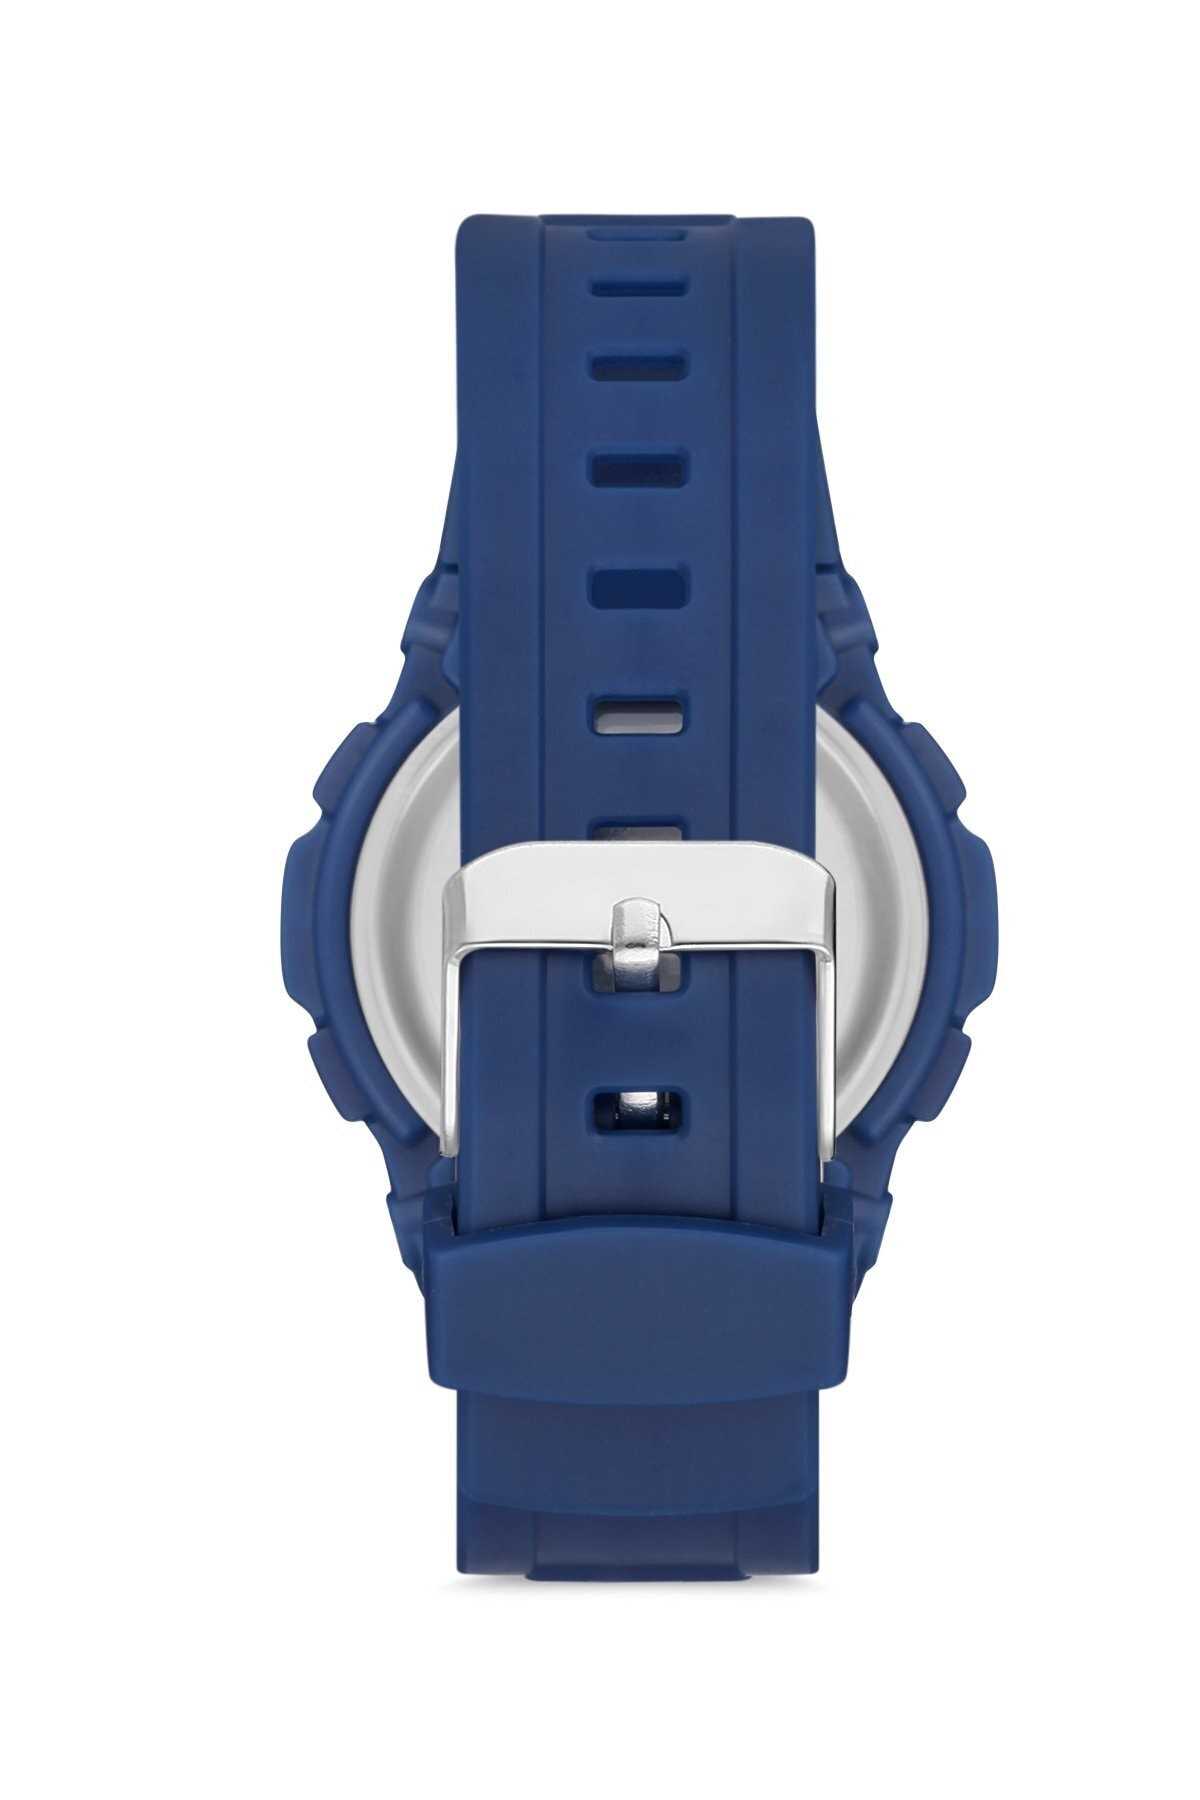 فروش ساعت بچه گانه جدید شیک WatchArt رنگ لاجوردی کد ty52244491